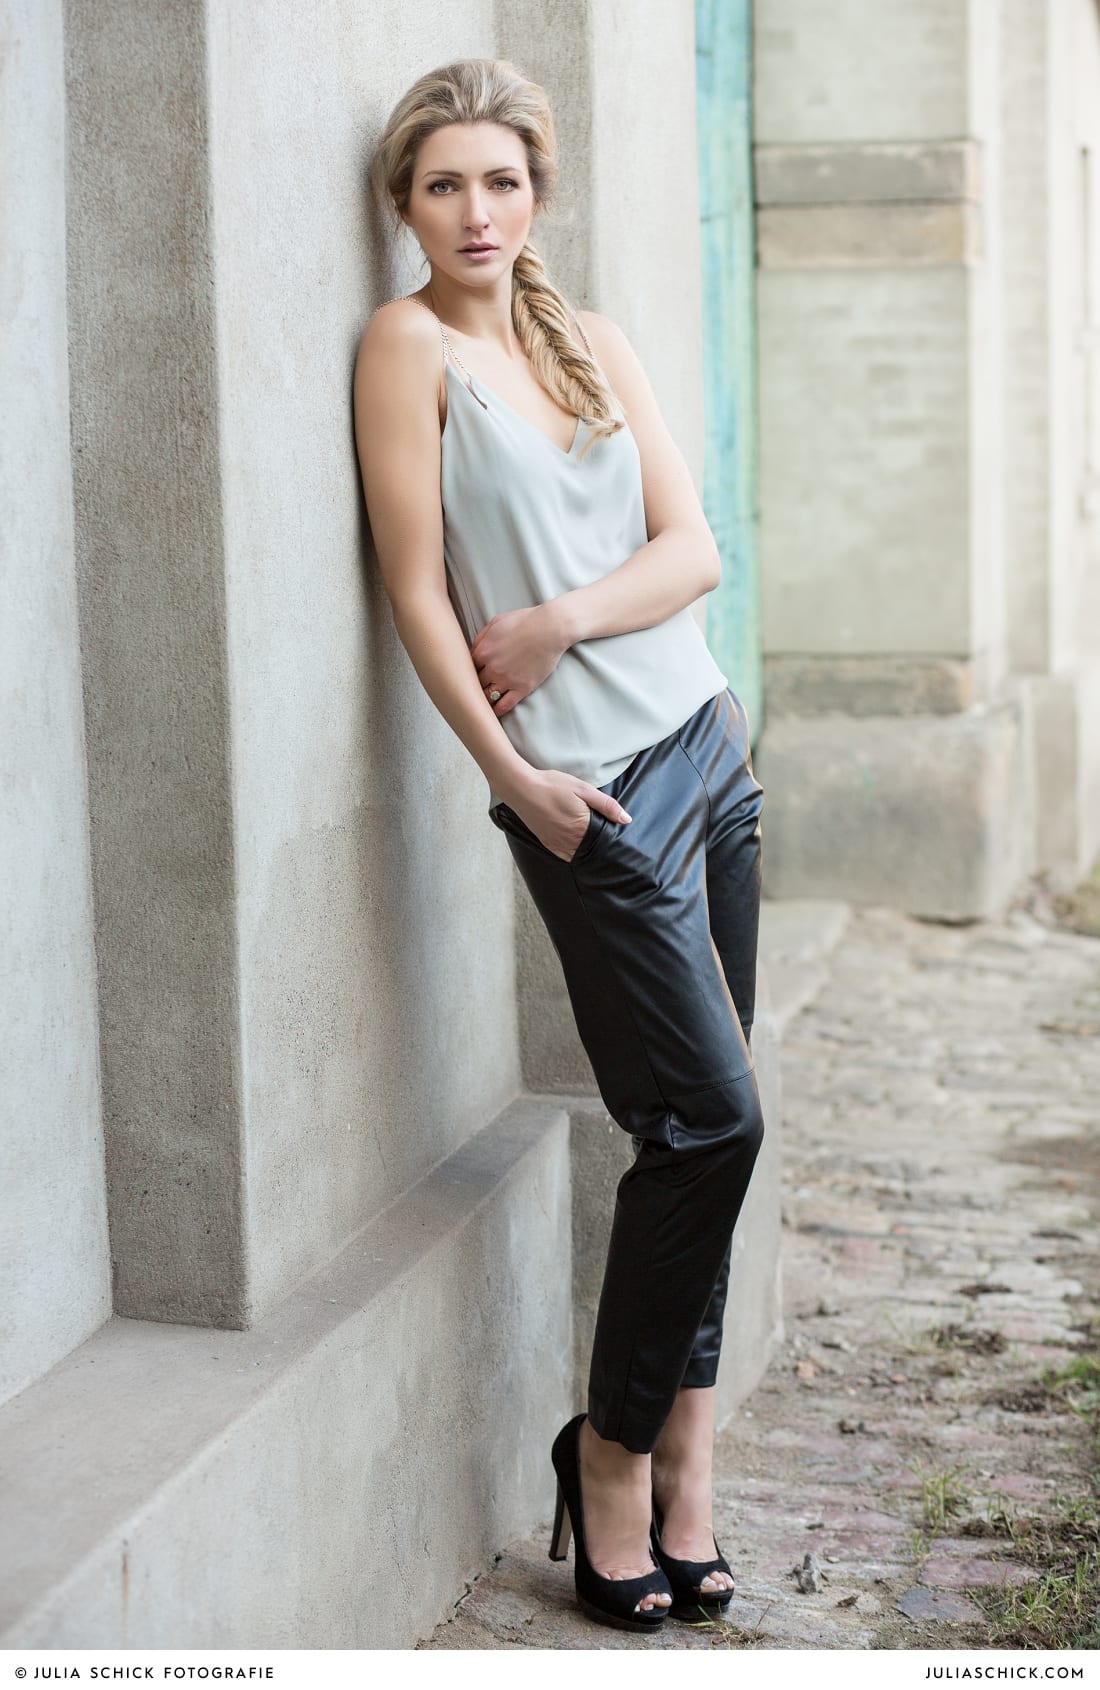 Fashionshooting von Modefotografin Julia Schick und Make-up-Artist Sandra Globke. Model mit Sommeroutfit von H & M